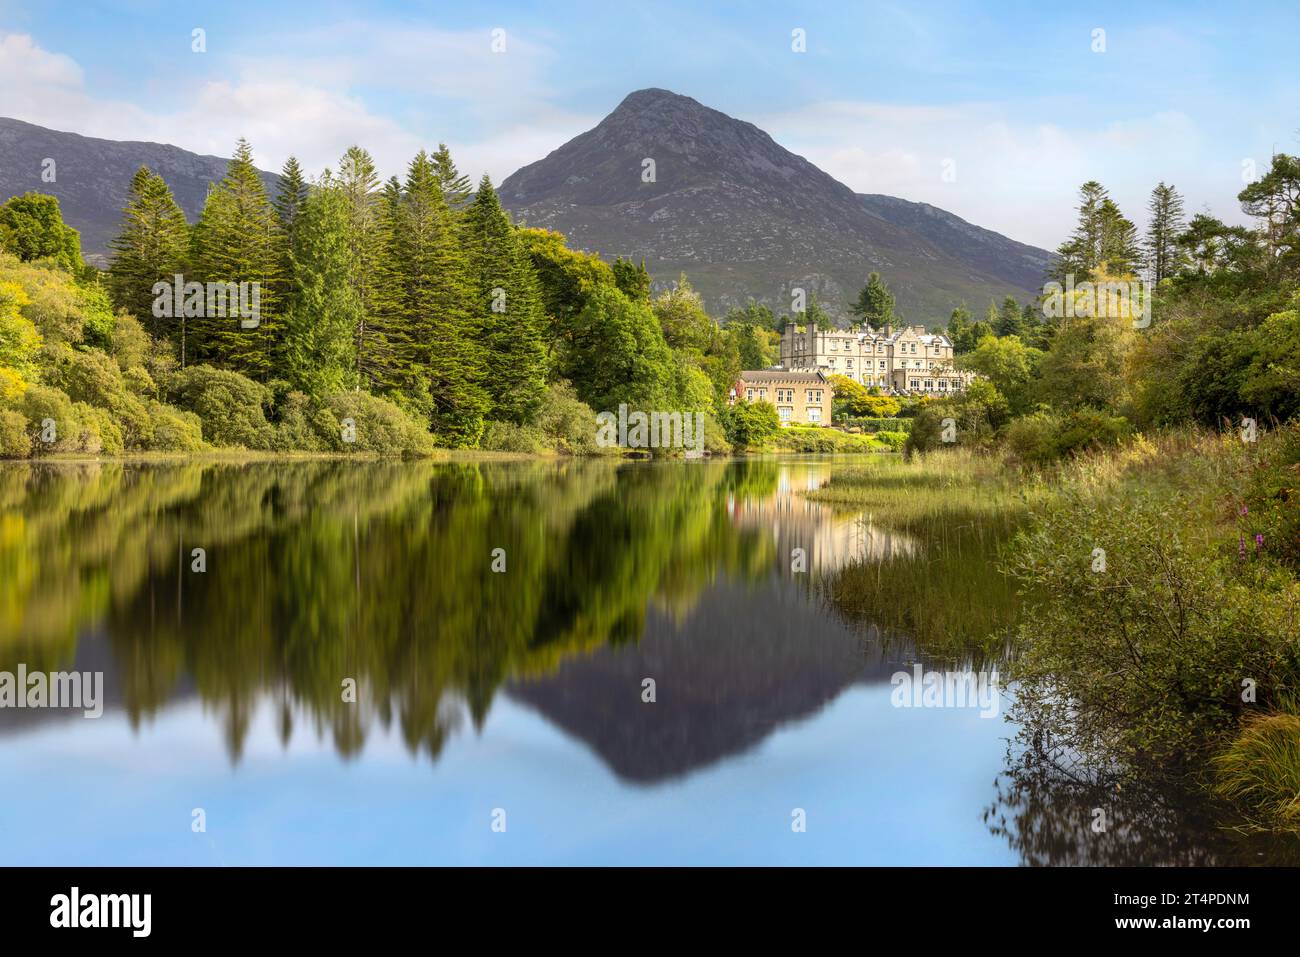 Il Ballynahinch Castle è un lussuoso hotel del XVIII secolo famoso per la pesca al salmone e lo splendido paesaggio in una tenuta privata a Connemara, IRELA Foto Stock